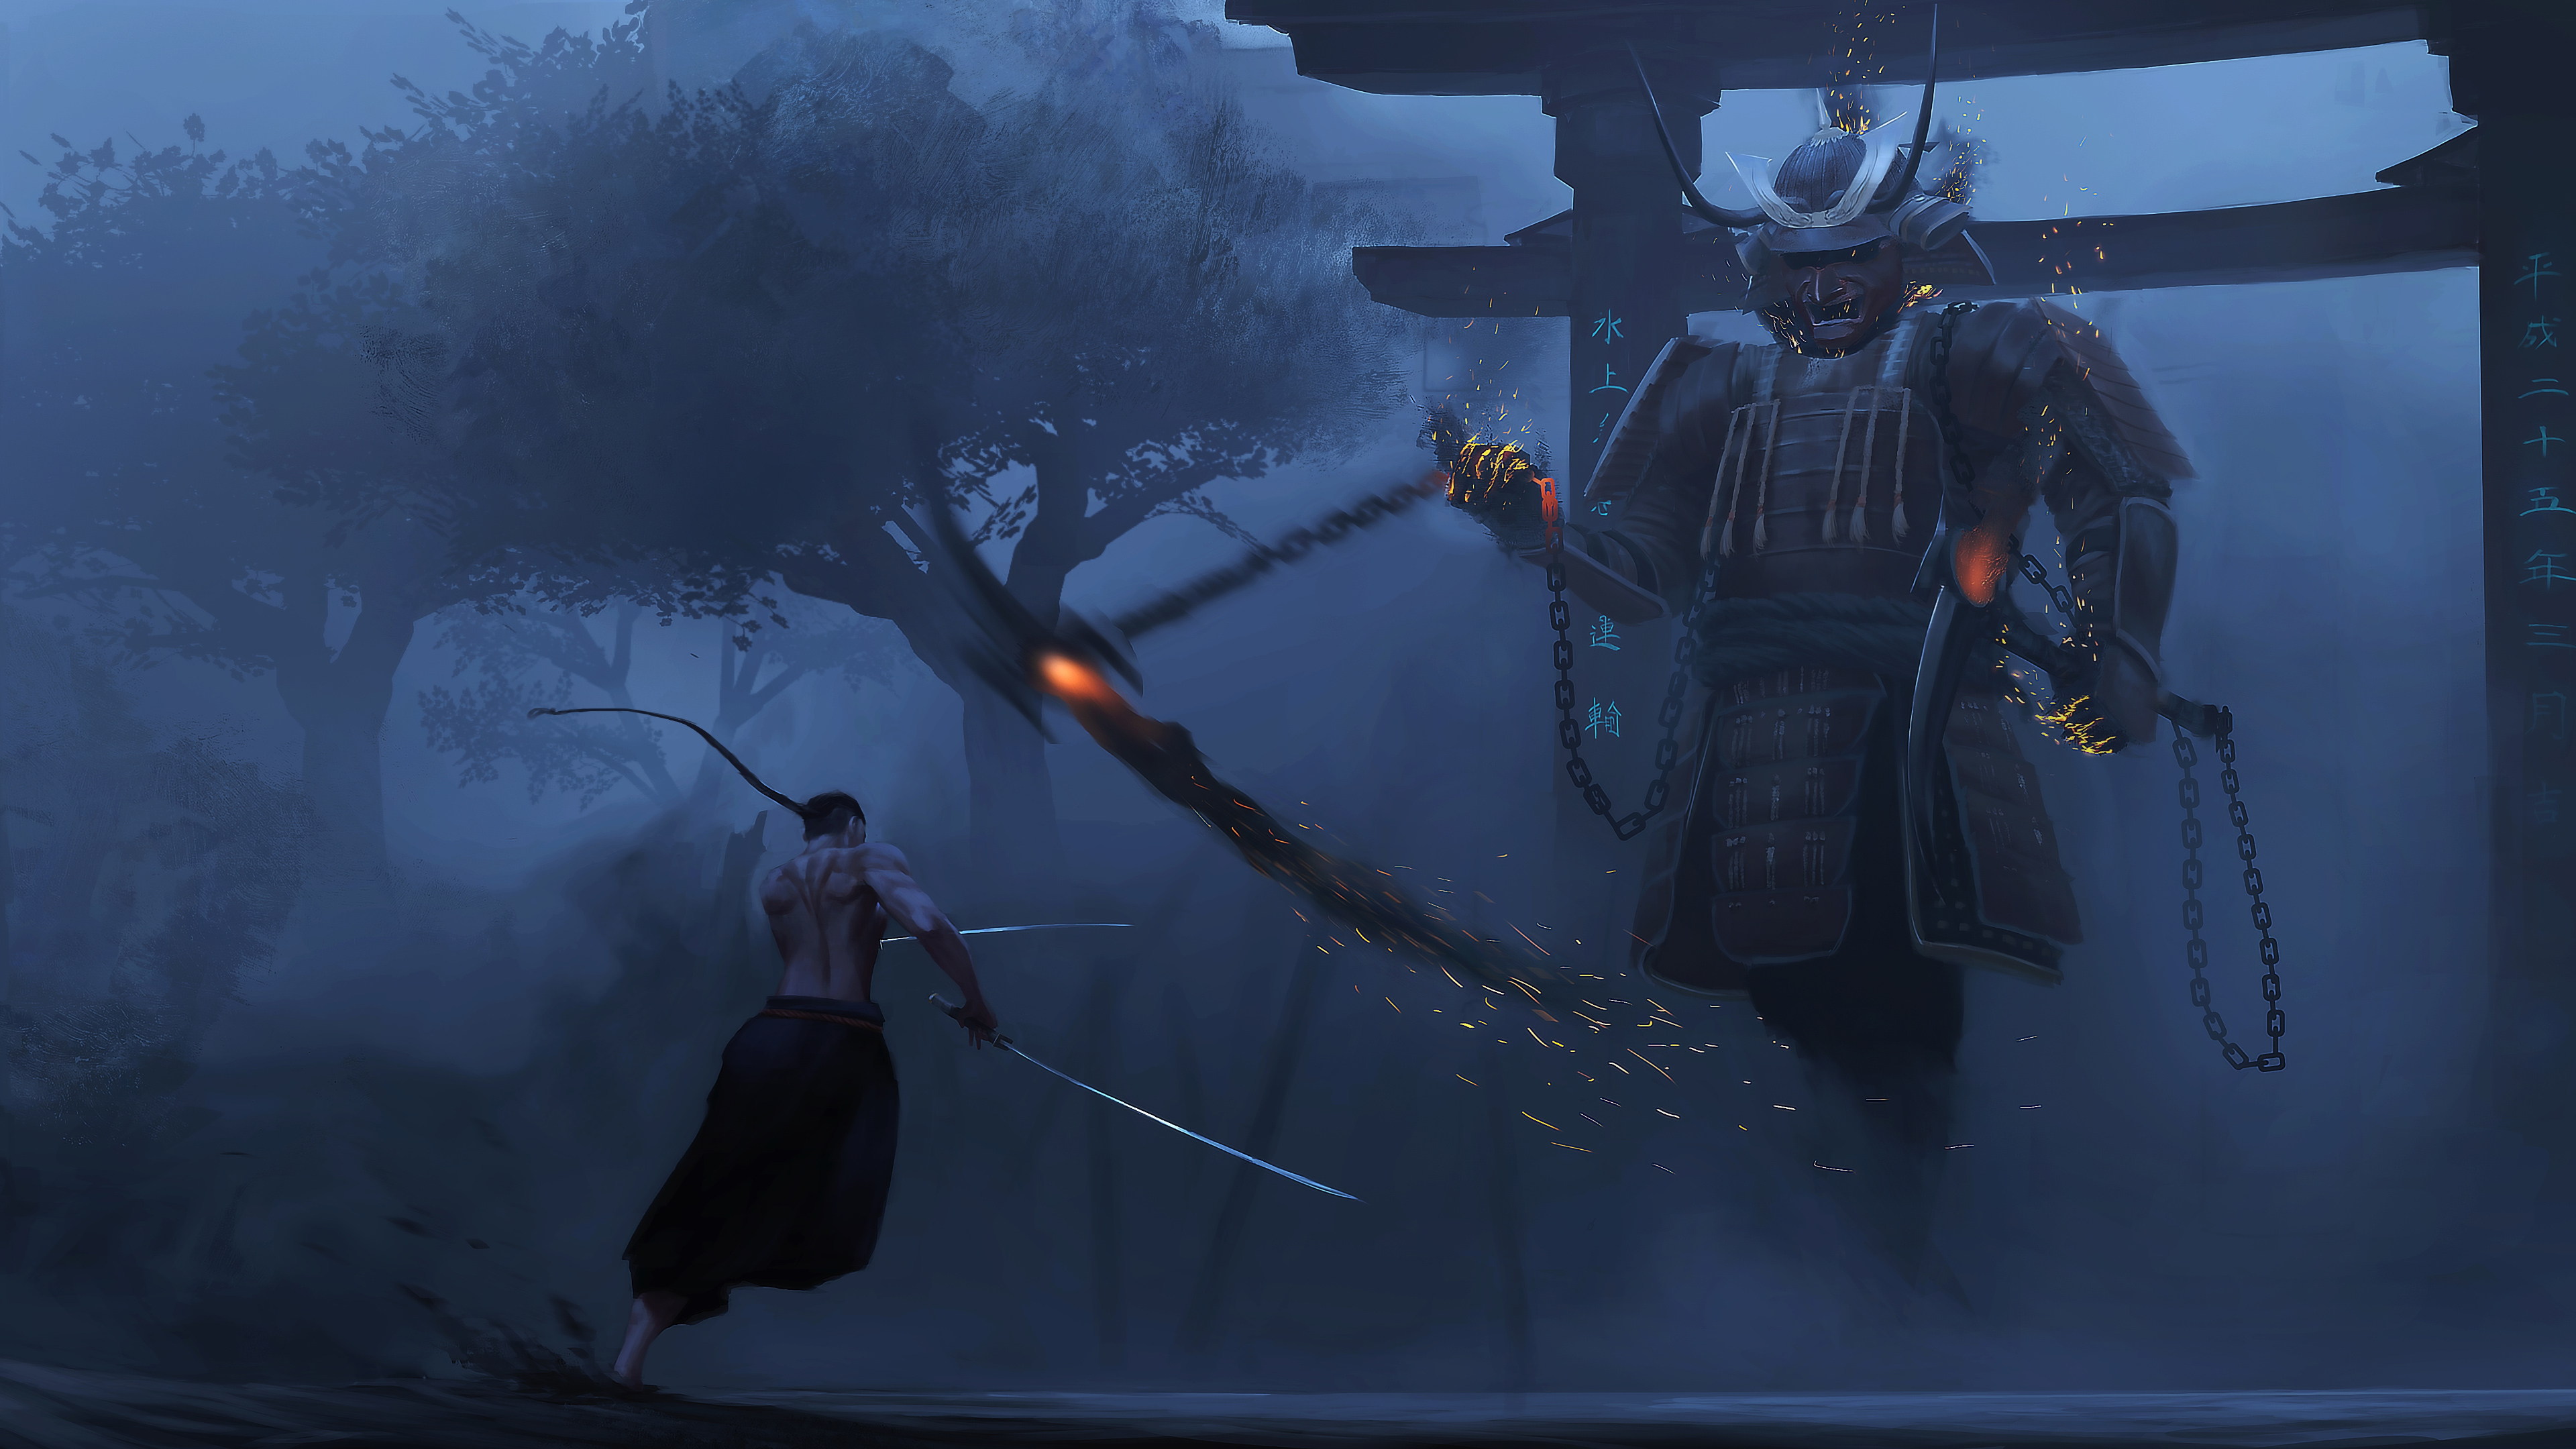 Samurai: Tựa game Samurai với chủ đề samurai đang chờ đón bạn. Dàn nhân vật được thiết kế tinh tế và trang phục cổ truyền làm nổi bật bầu không khí của nền văn hóa Nhật Bản. Sẵn sàng trở thành một chiến binh samurai tài ba và tham gia vào cuộc phiêu lưu đầy thử thách trong game này.